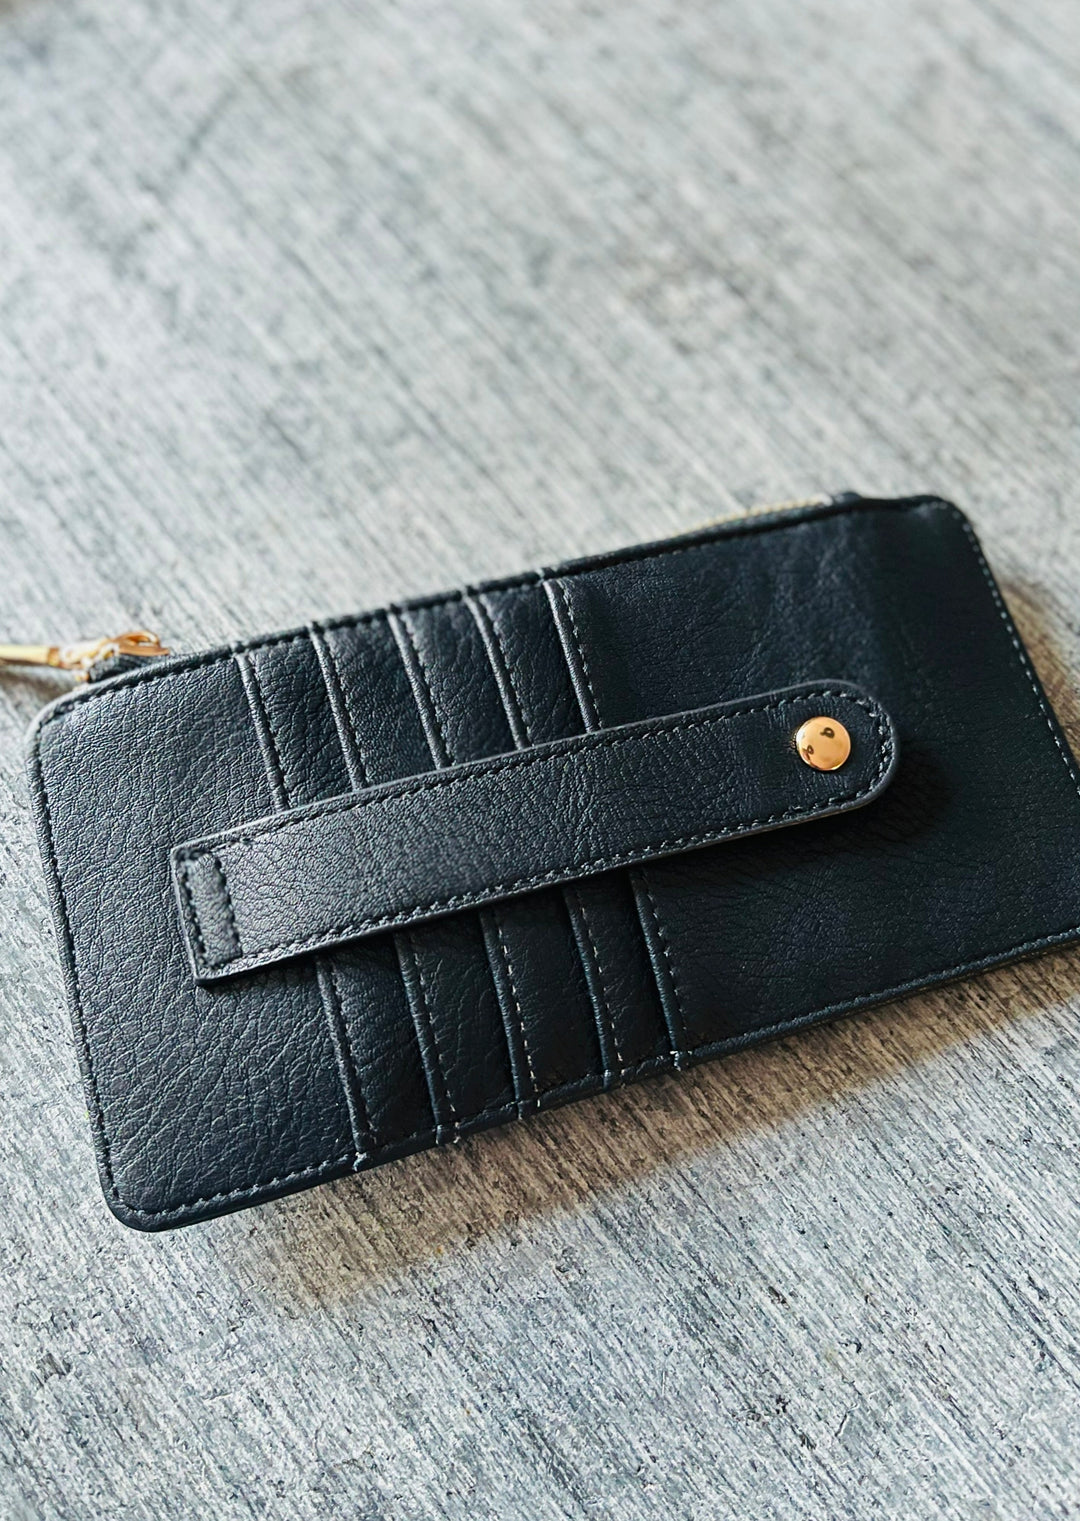 Black Slim Card Holder Wallet